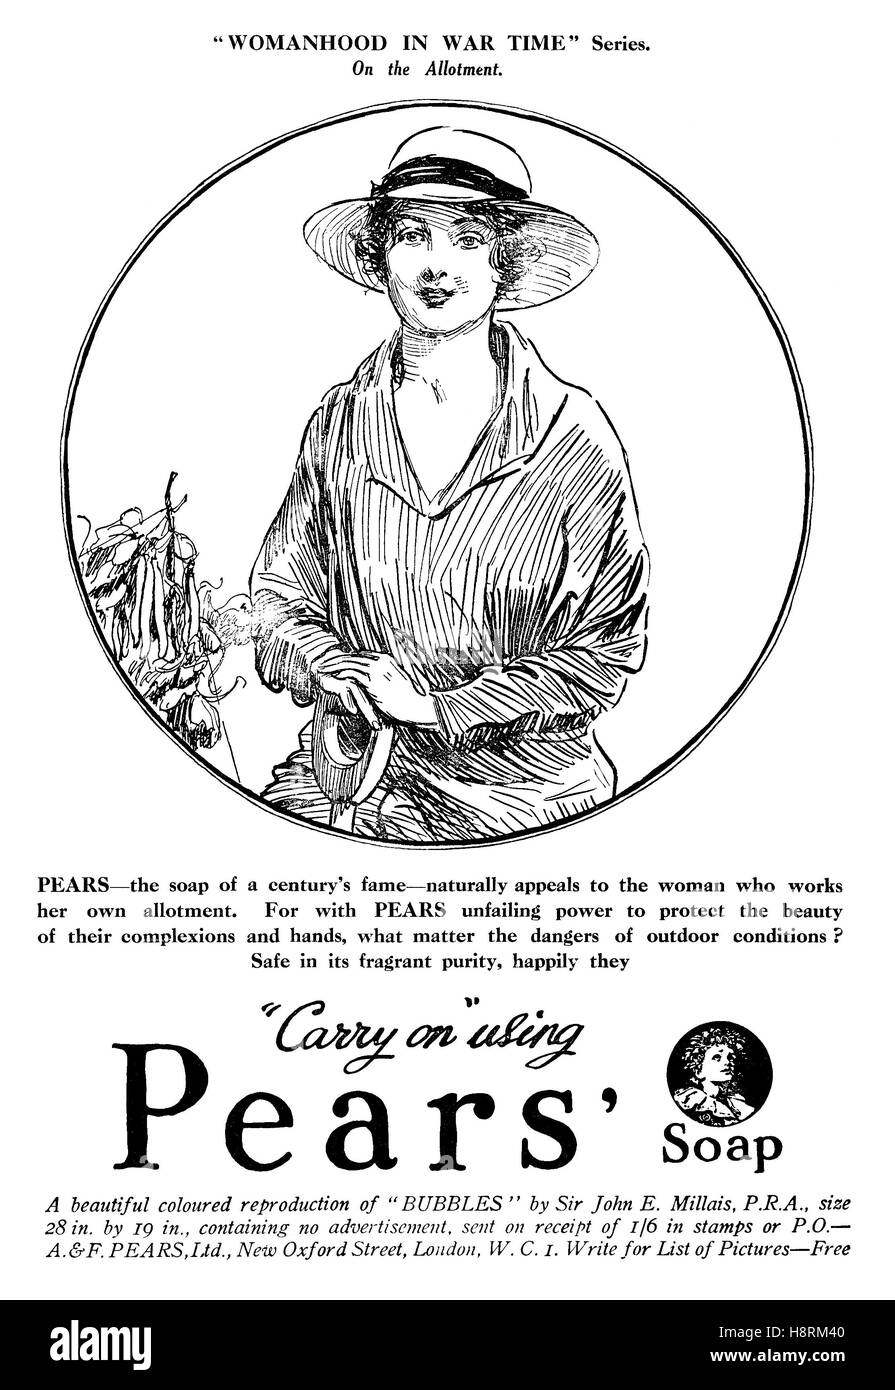 1918 bellico inglese pubblicità per le pere' Soap Foto Stock